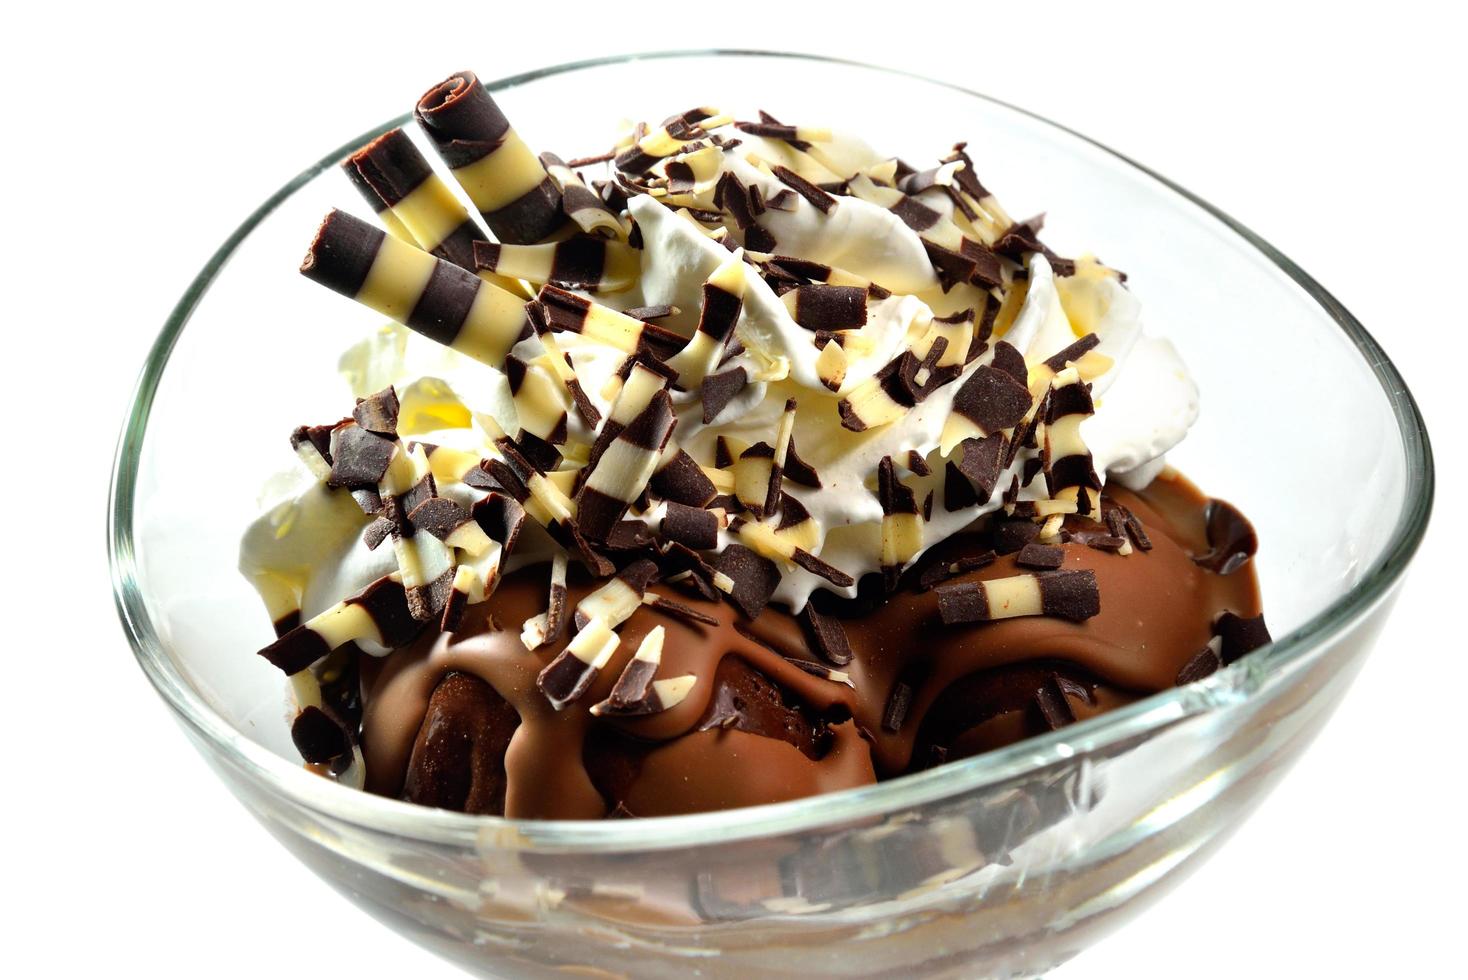 Chocolate sundae close-up photo